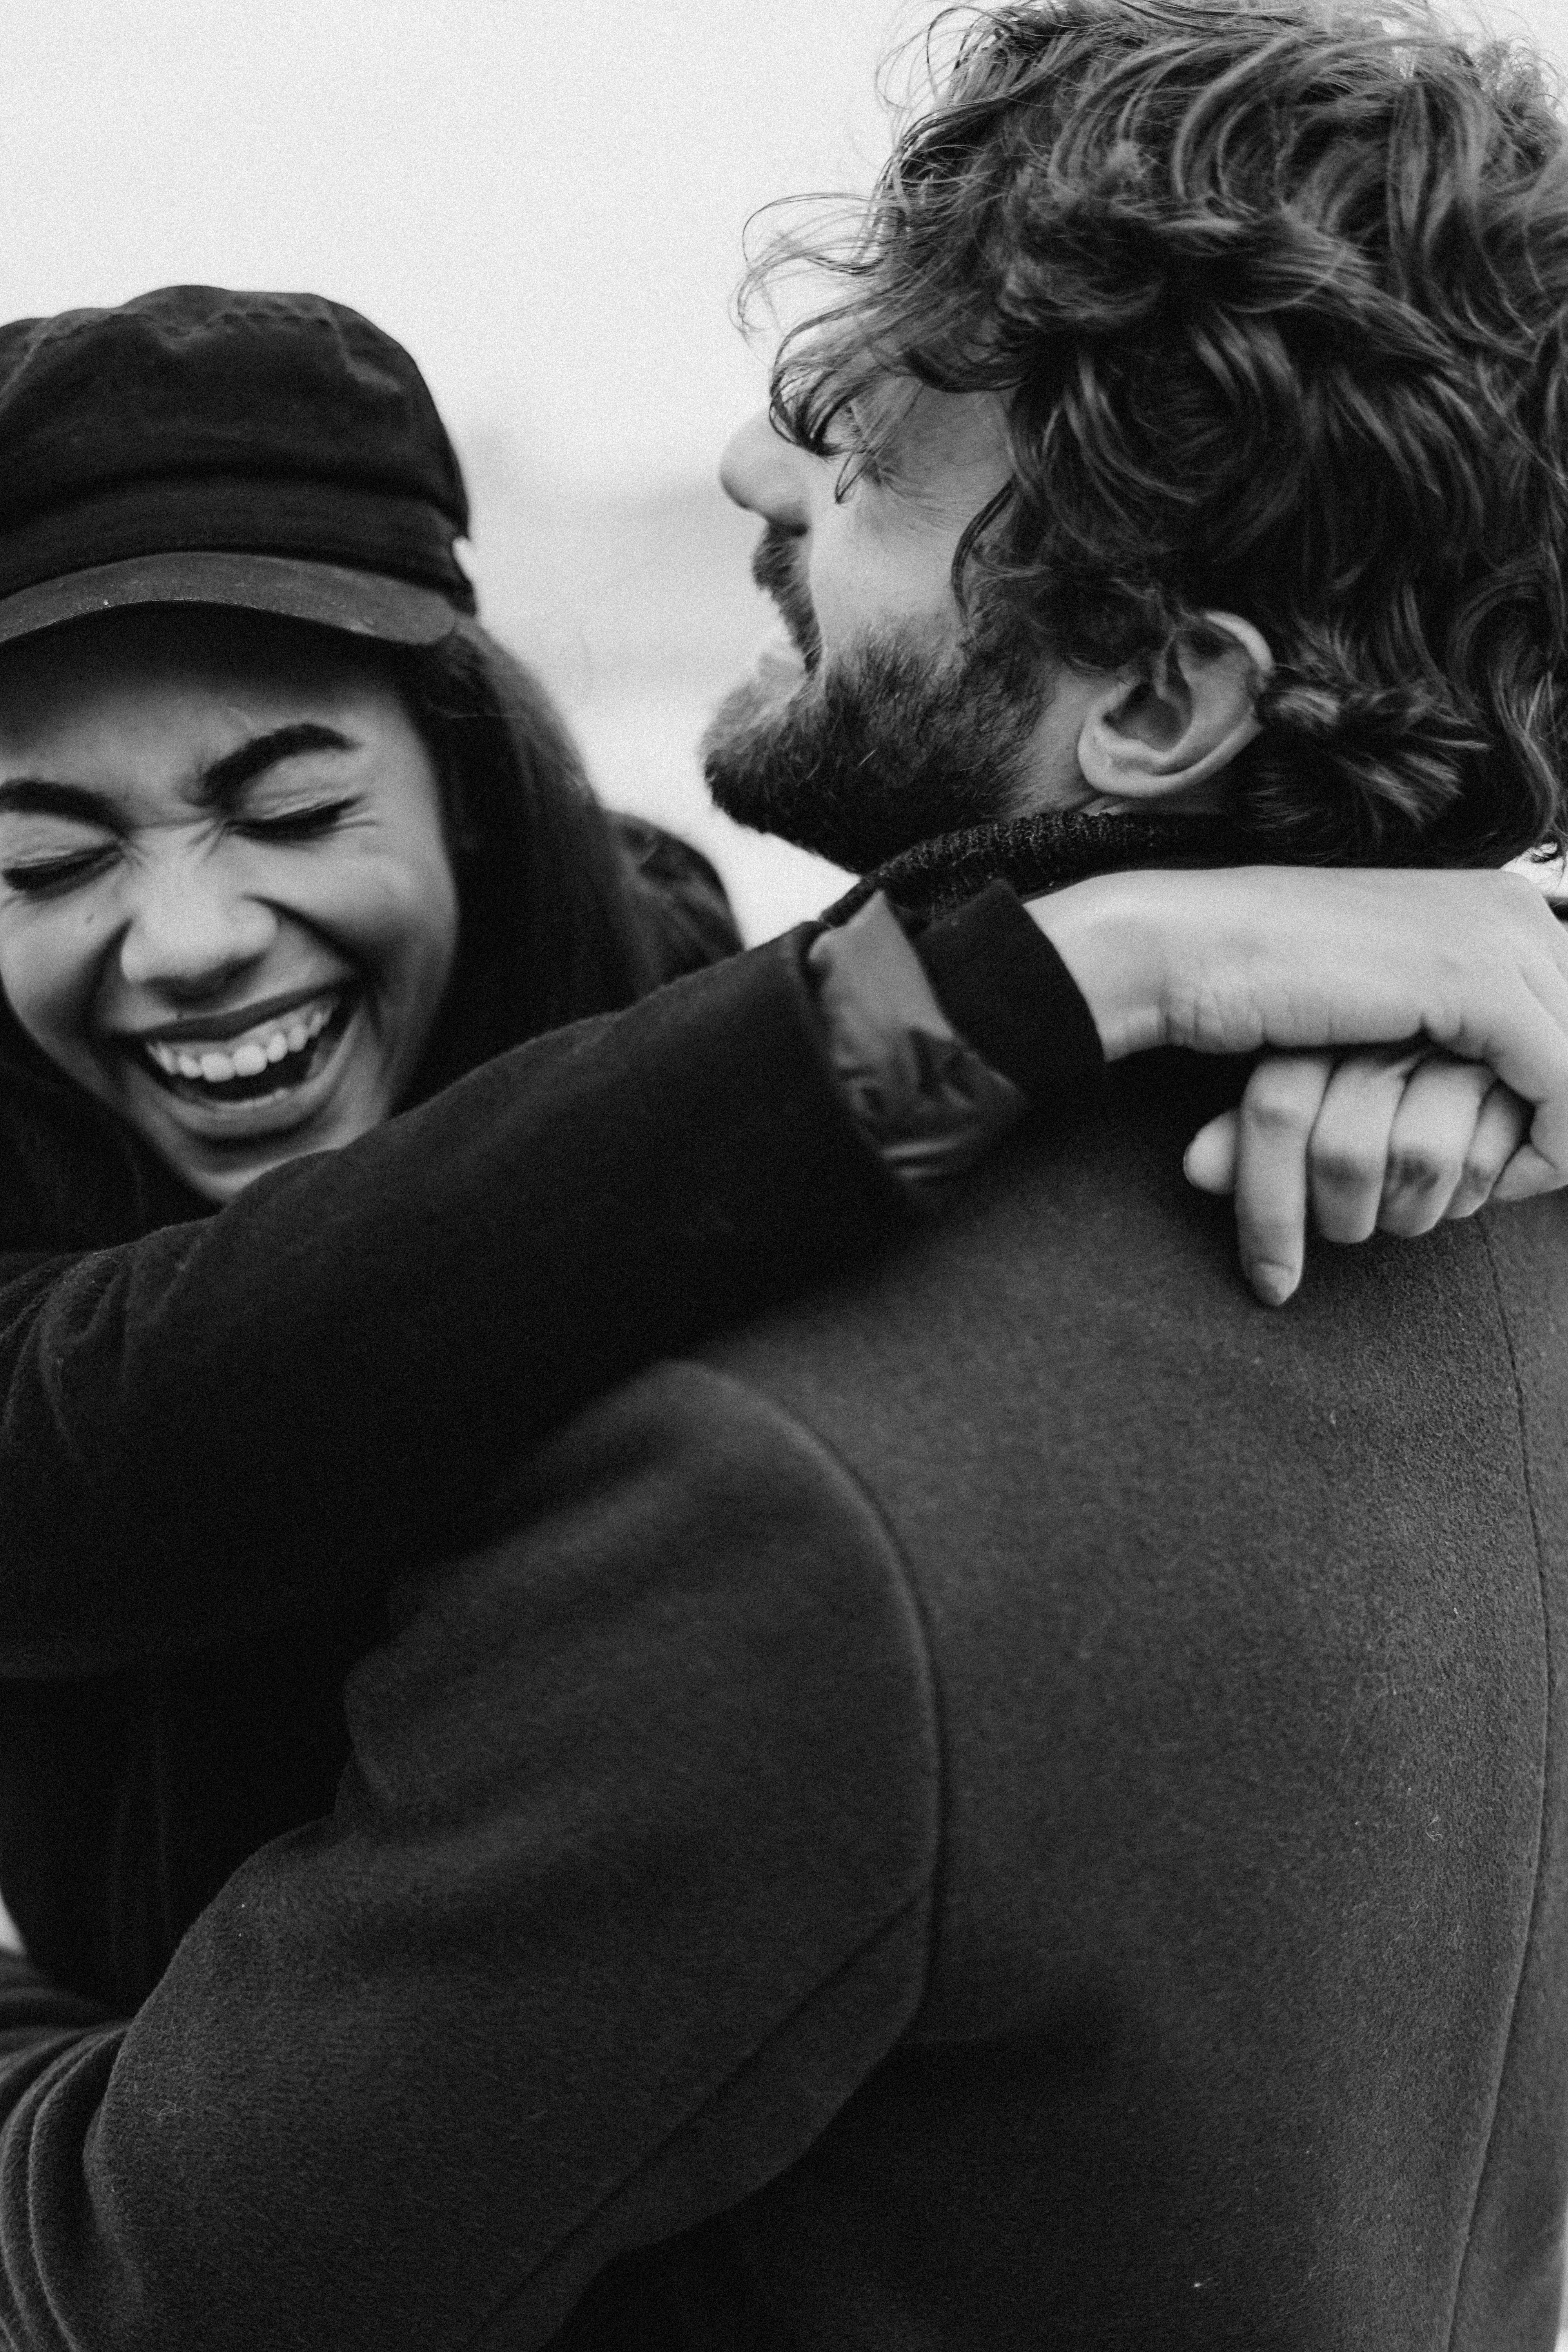 Ein Paar, das sich umarmt und zusammen lacht | Quelle: Pexels